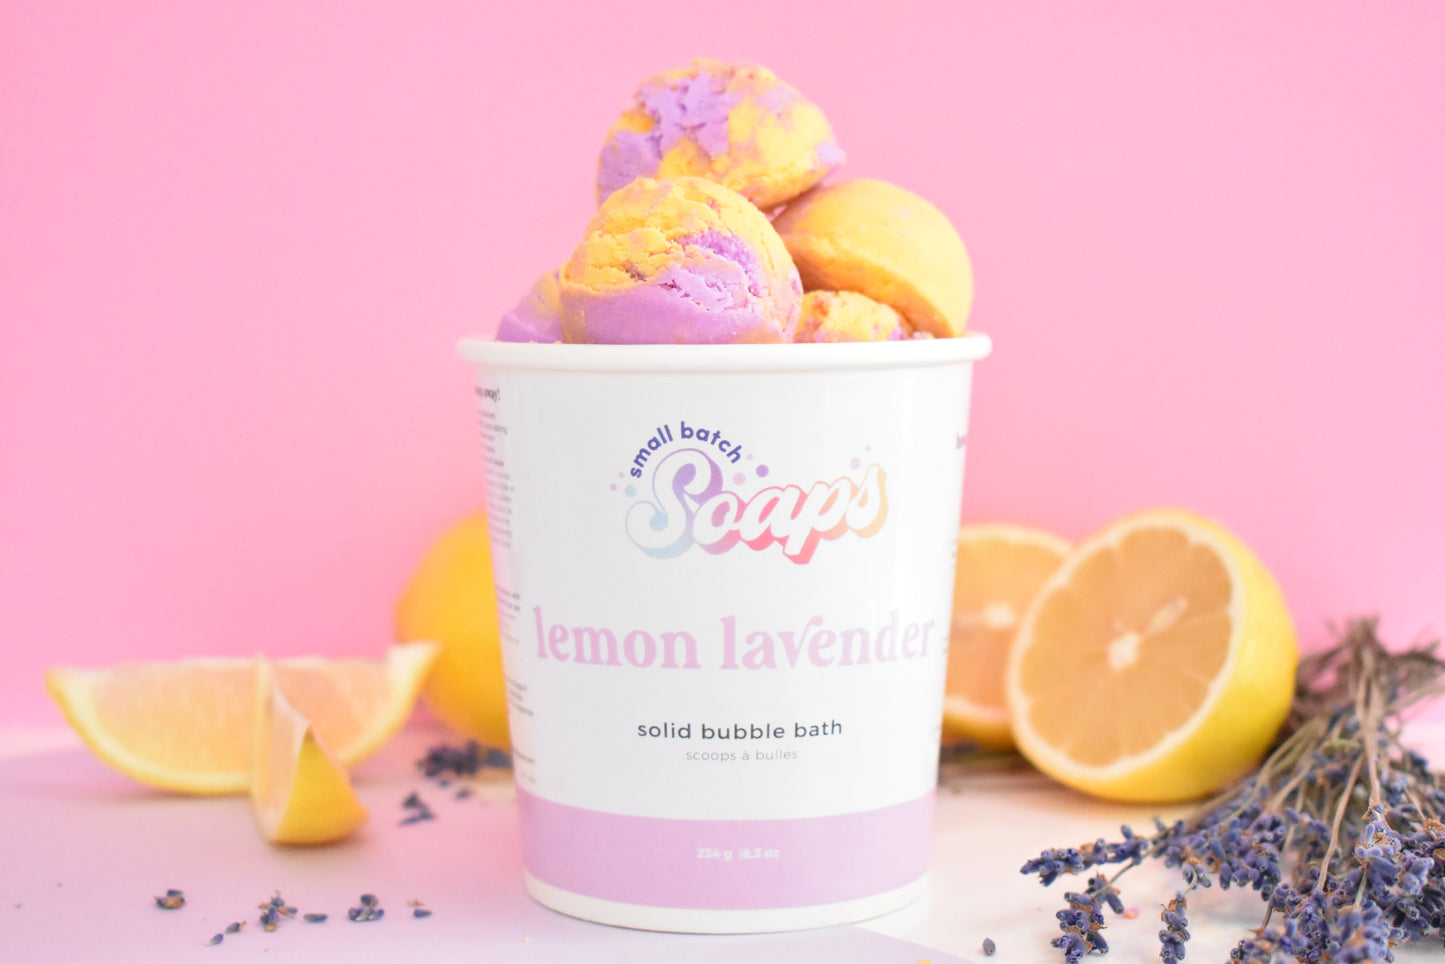 Lemon Lavender Bubble Scoops - Small Batch Soaps